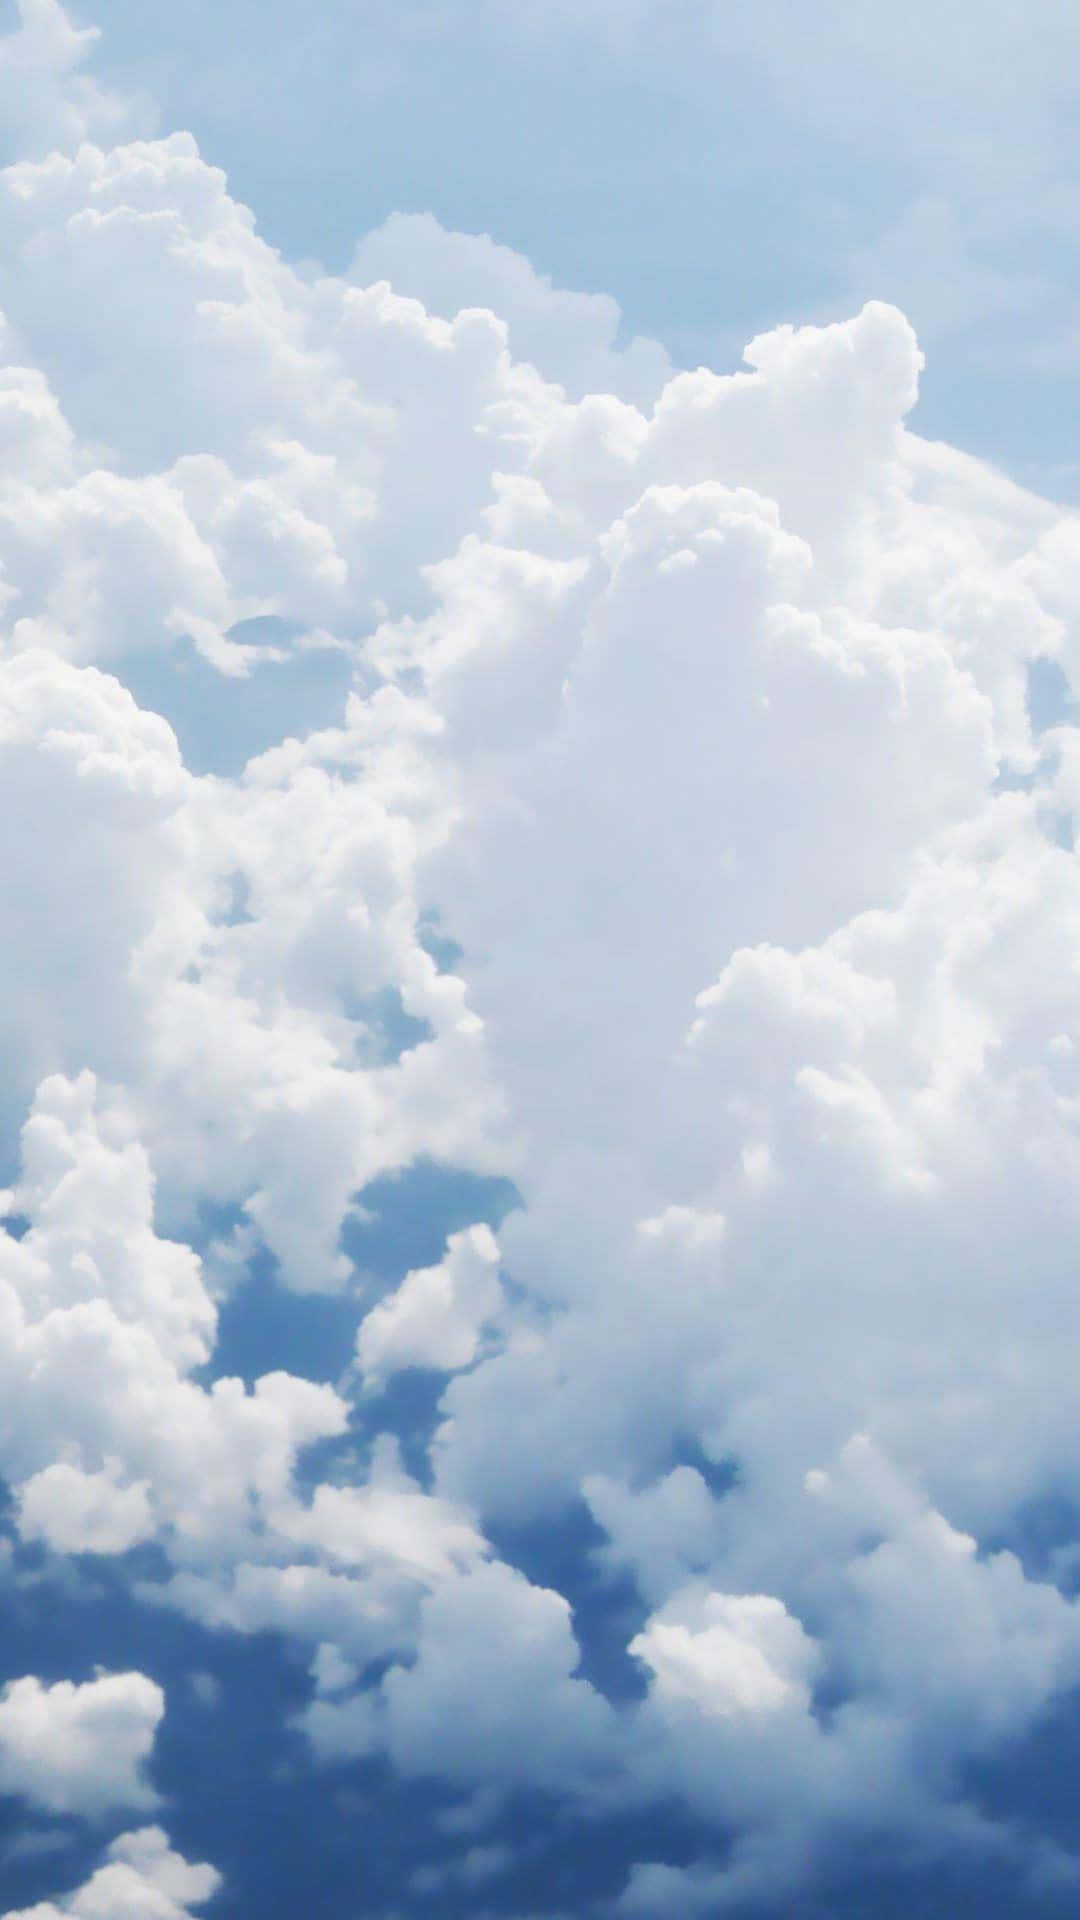 Leichteund Flauschige Weiße Wolken Vor Einem Blauen Himmel Stehen Im Kontrast Zu Den Farben Der Erde Darunter. Wallpaper